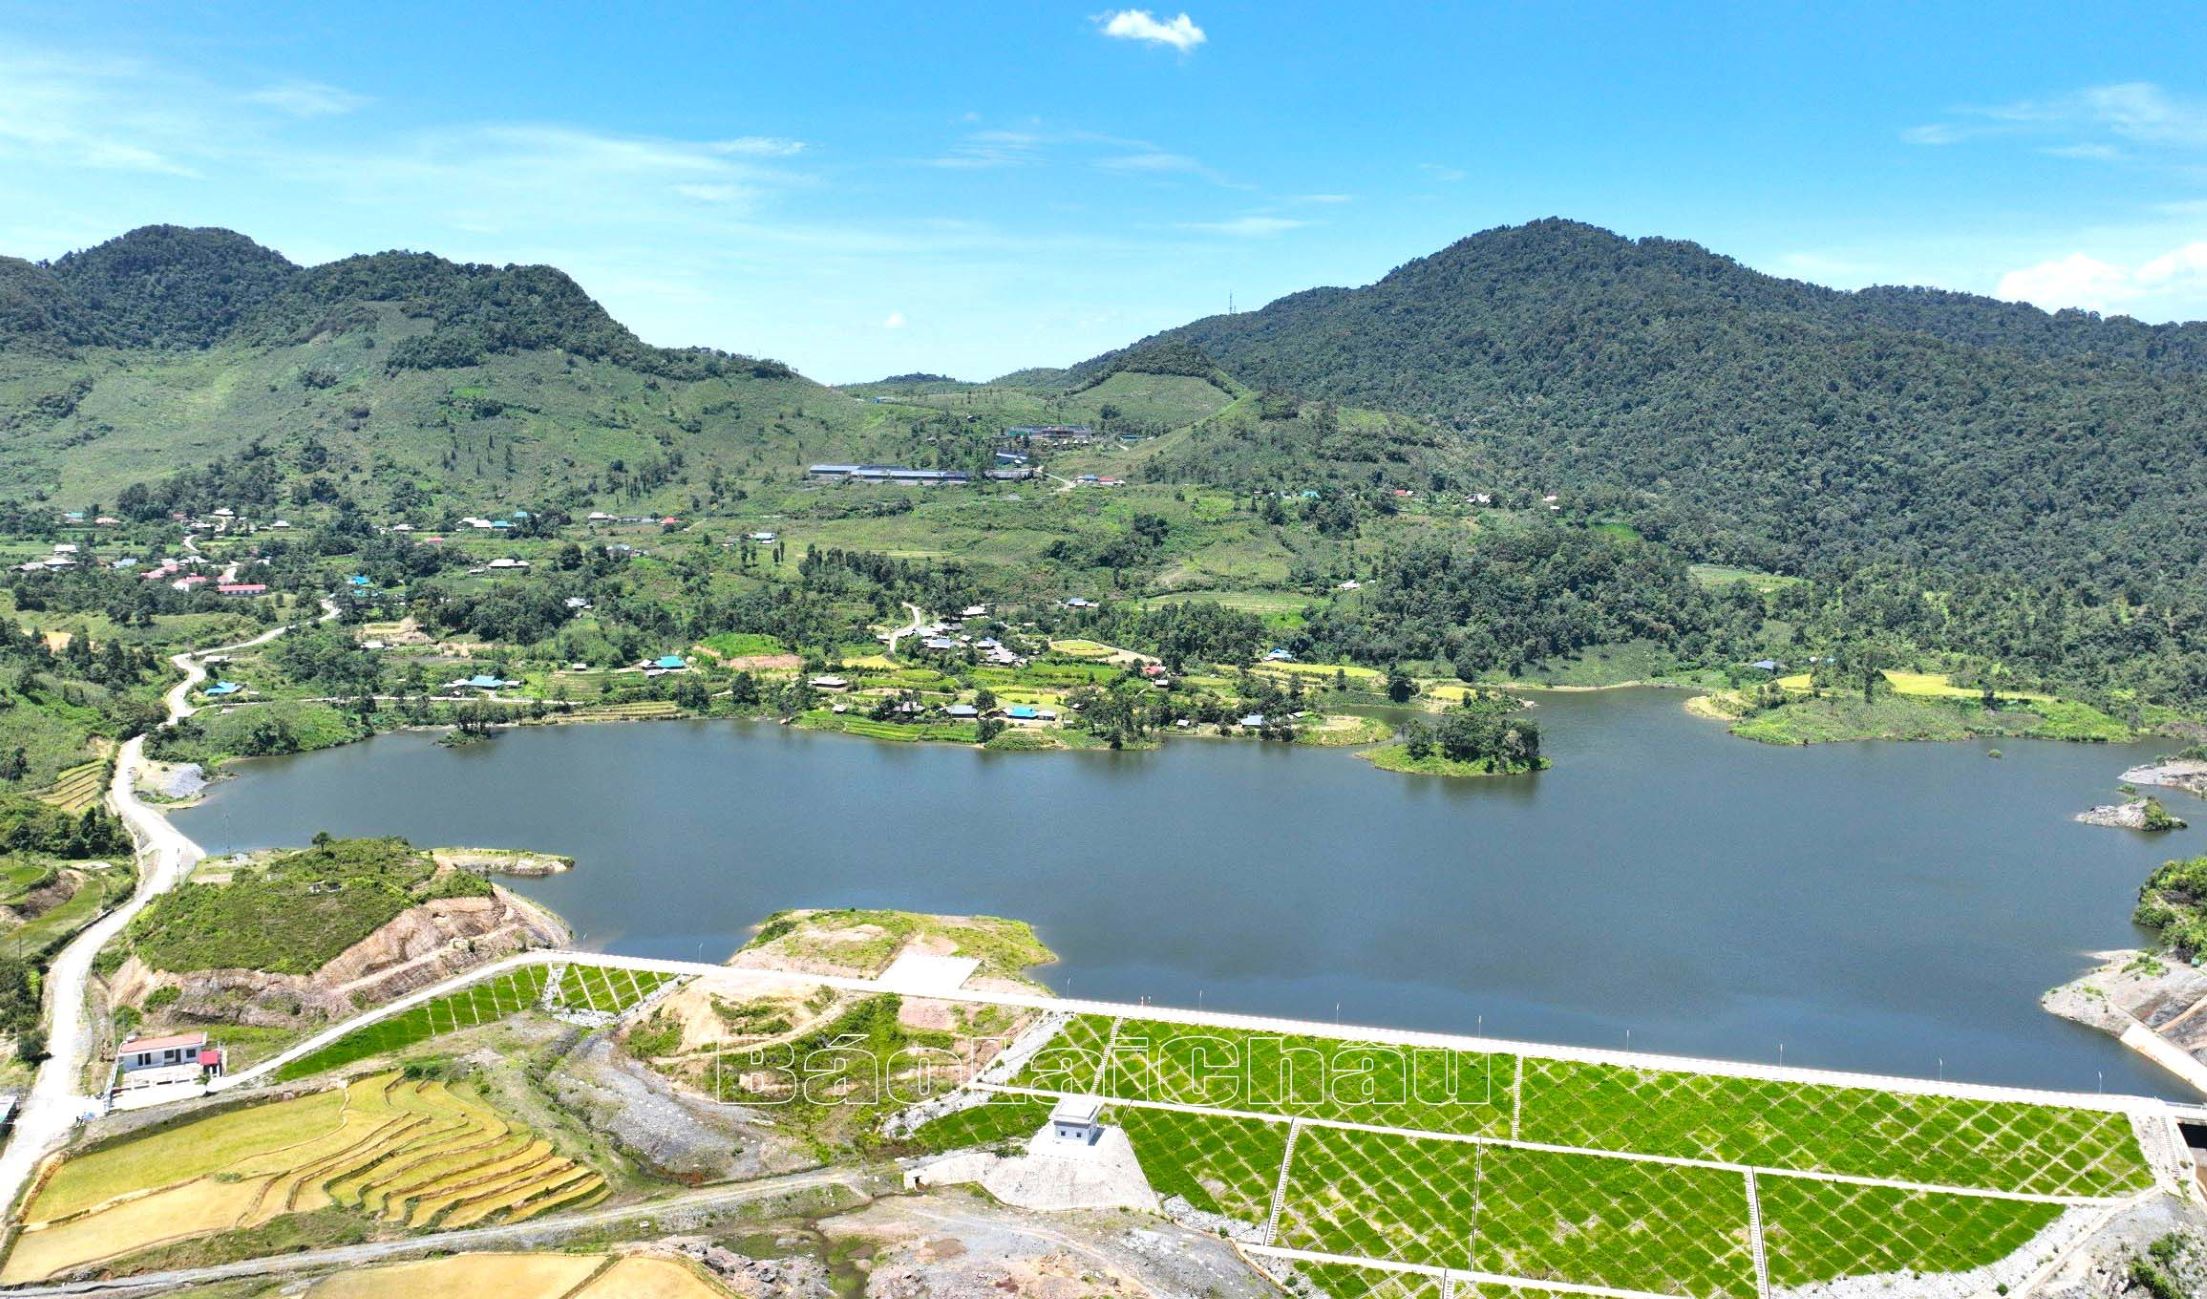 Hồ xã Sà Dề Phìn đang được đầu tư để khách du lịch trải nghiệm lòng hồ trong thời gian tới.